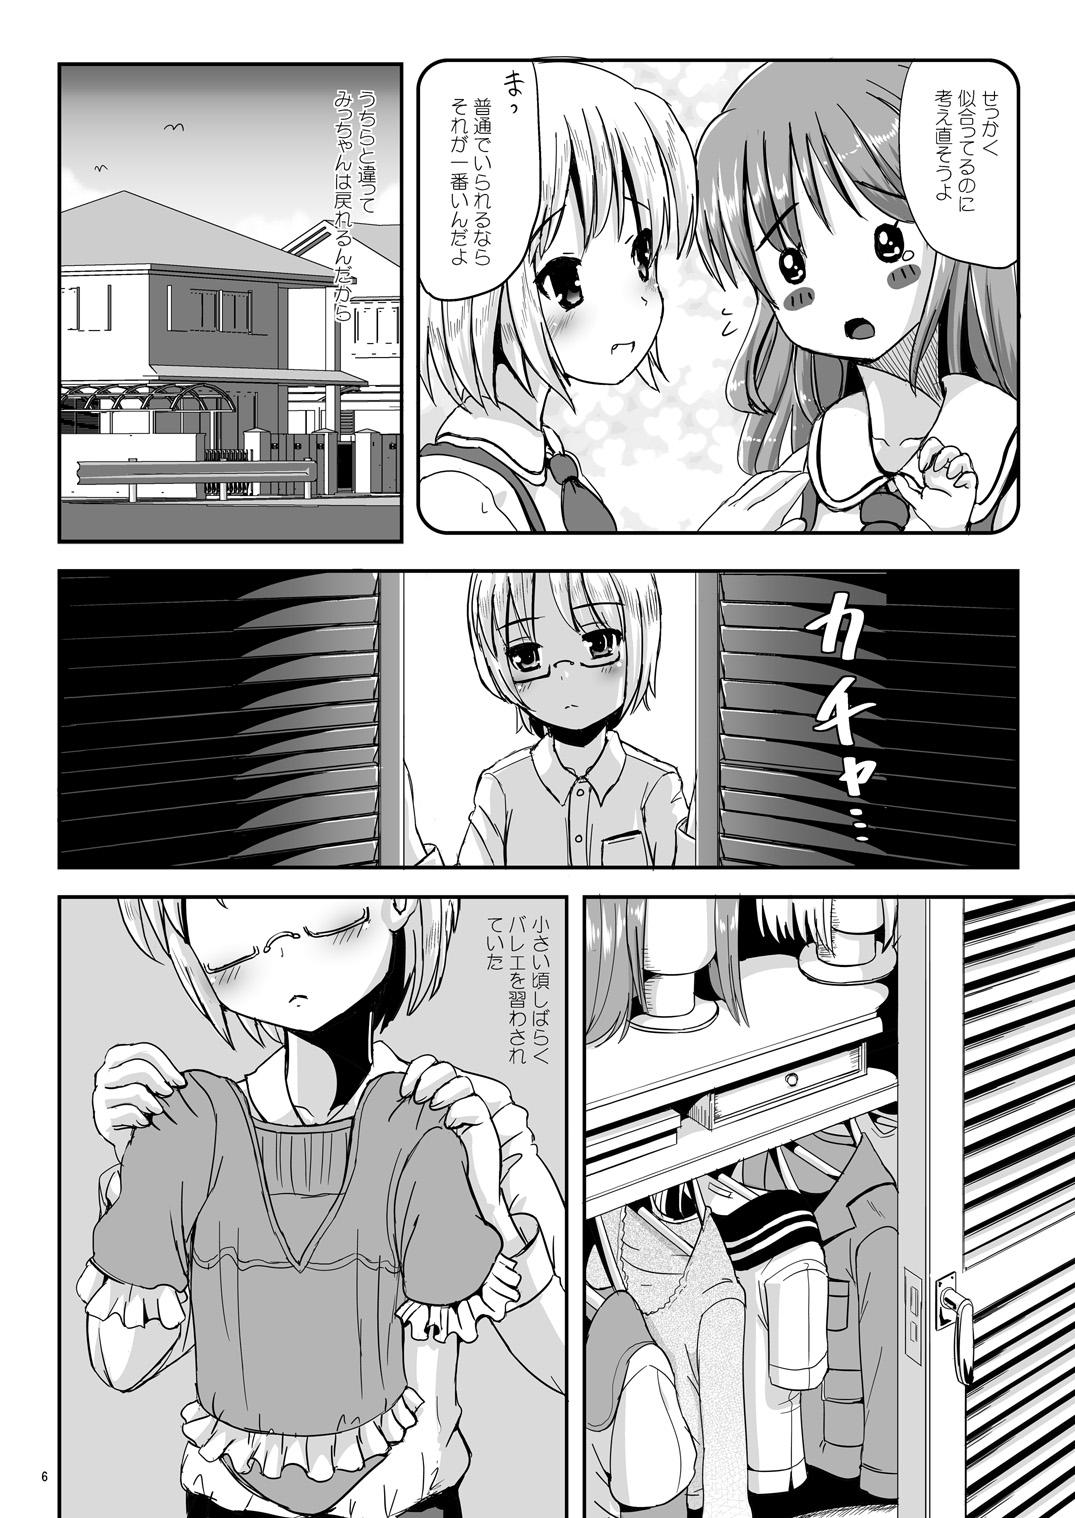 Realsex Natsume no Shiori 6 Masterbation - Page 5